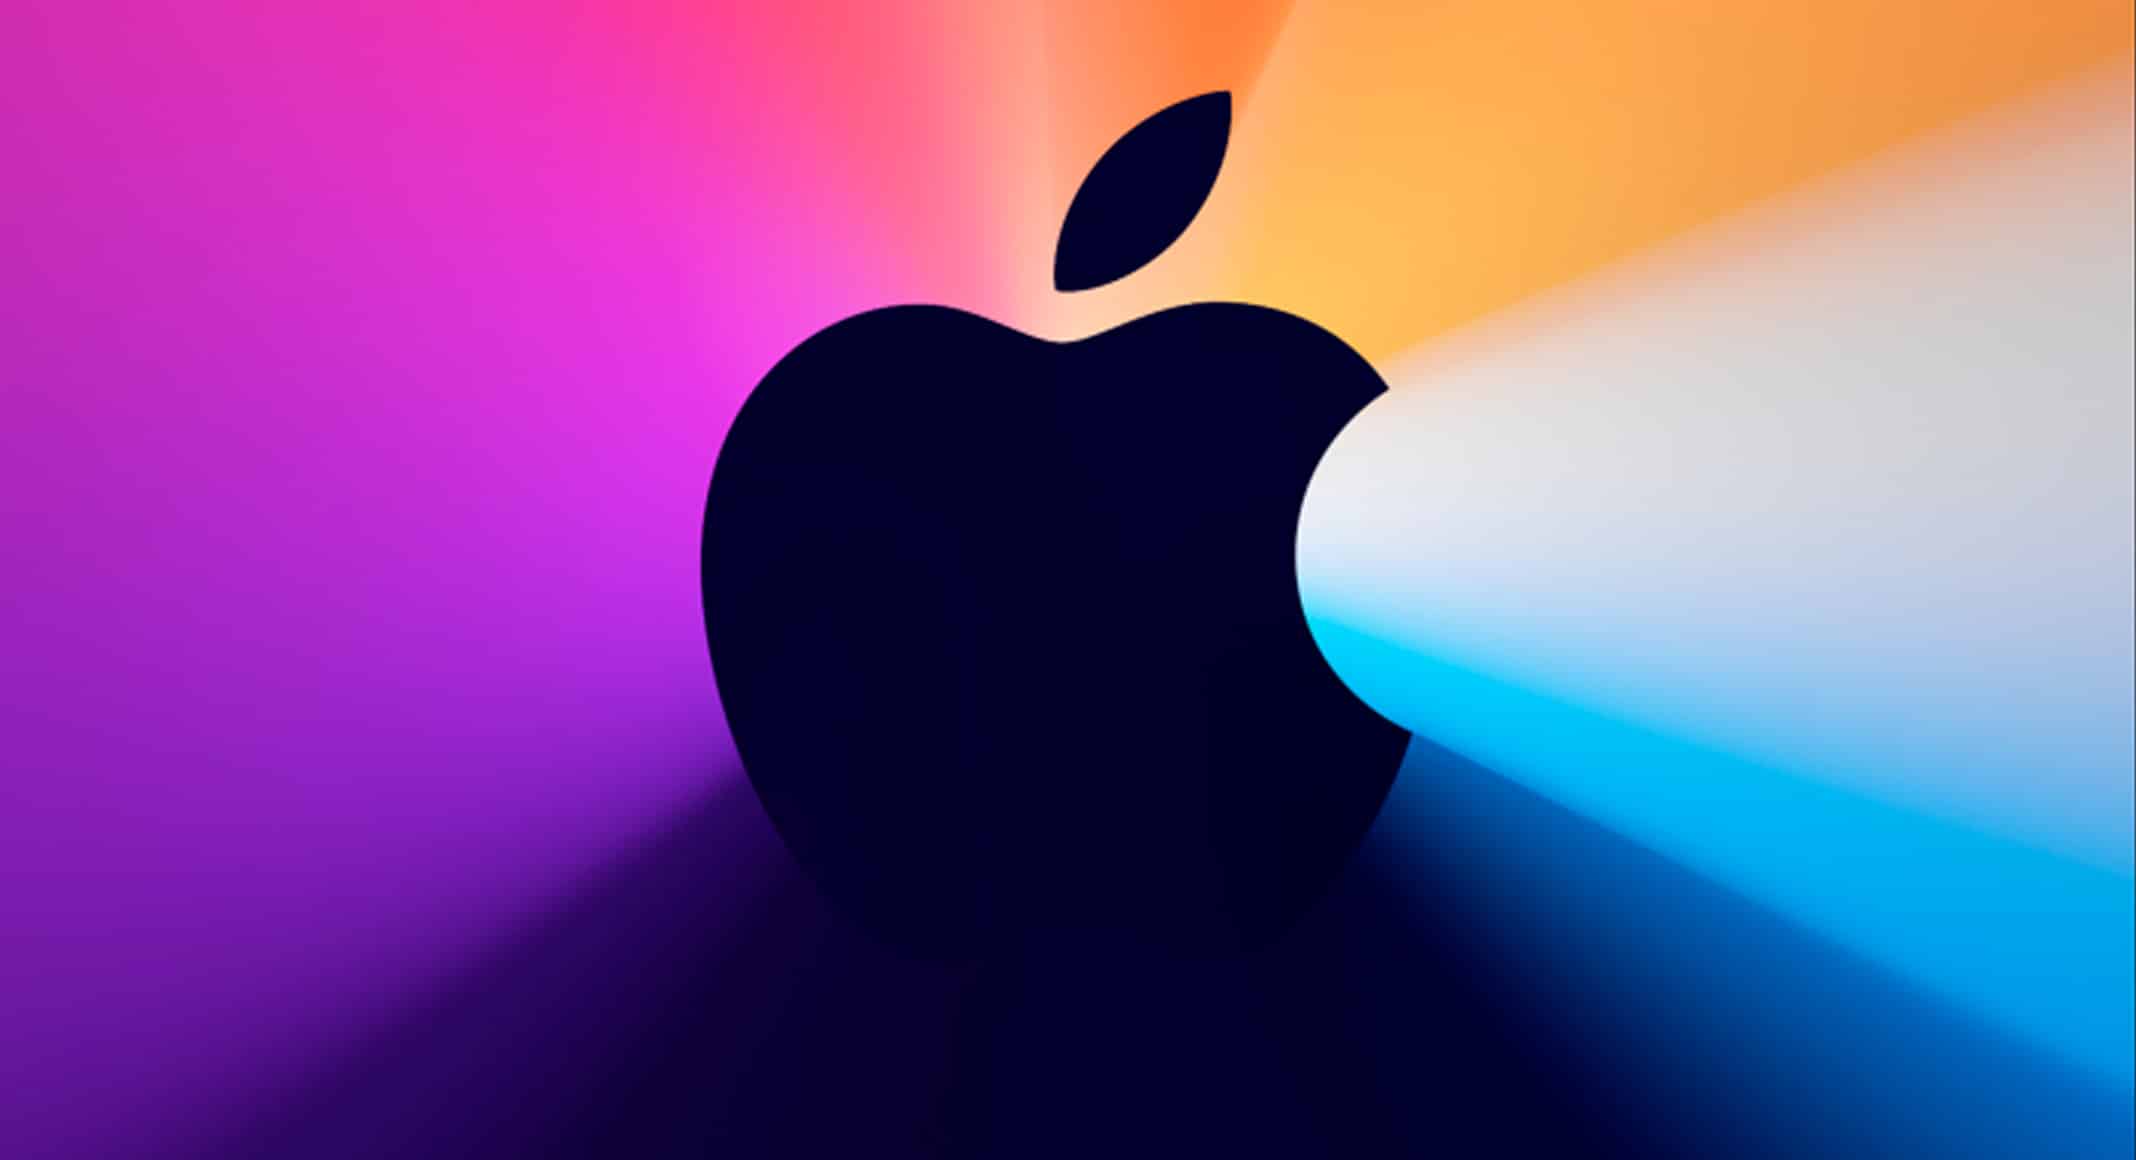 Evento Apple del 10 de noviembre del 2020